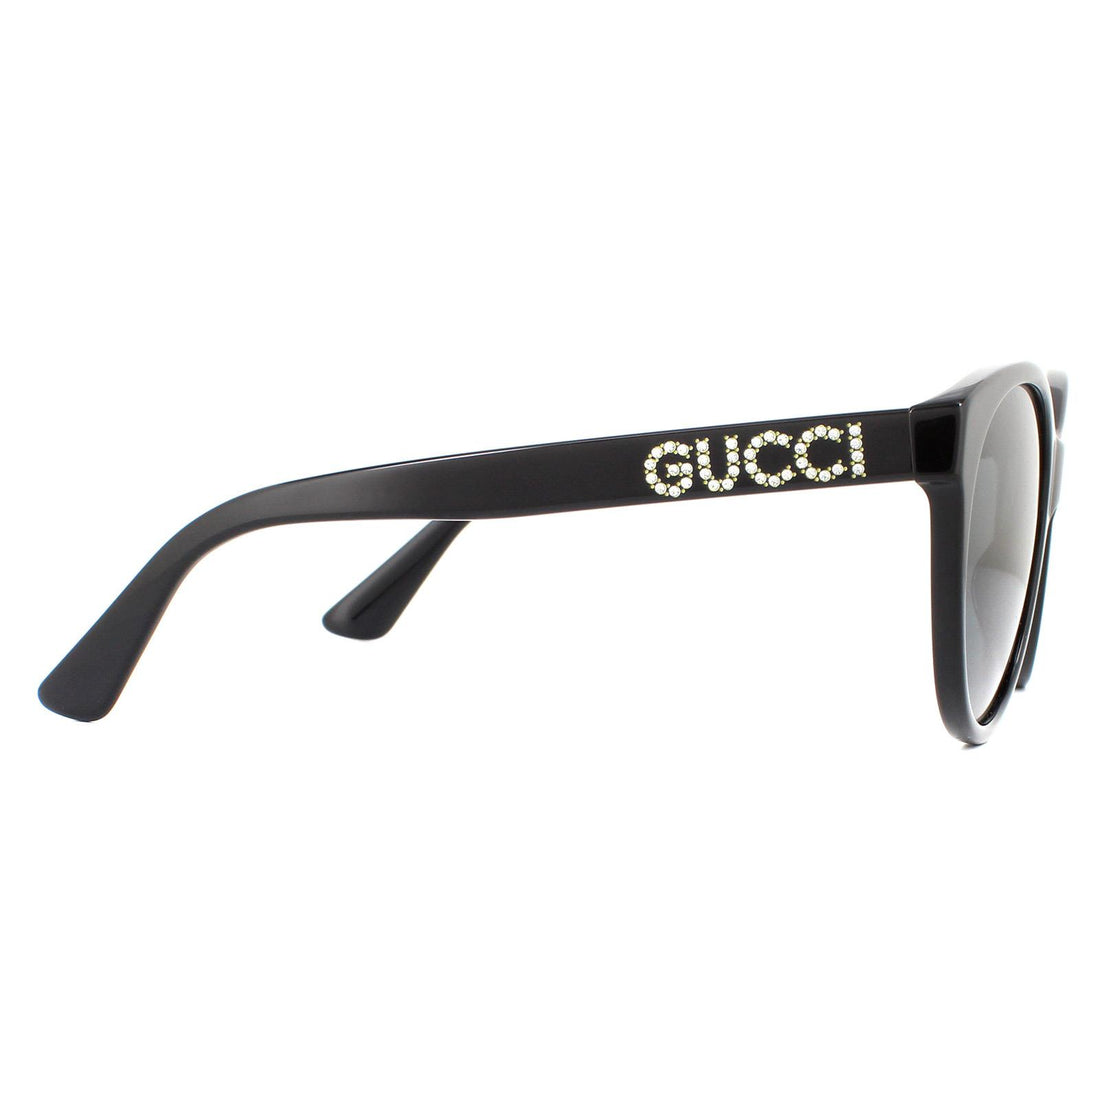 Gucci Sunglasses GG0419S 001 Black Grey